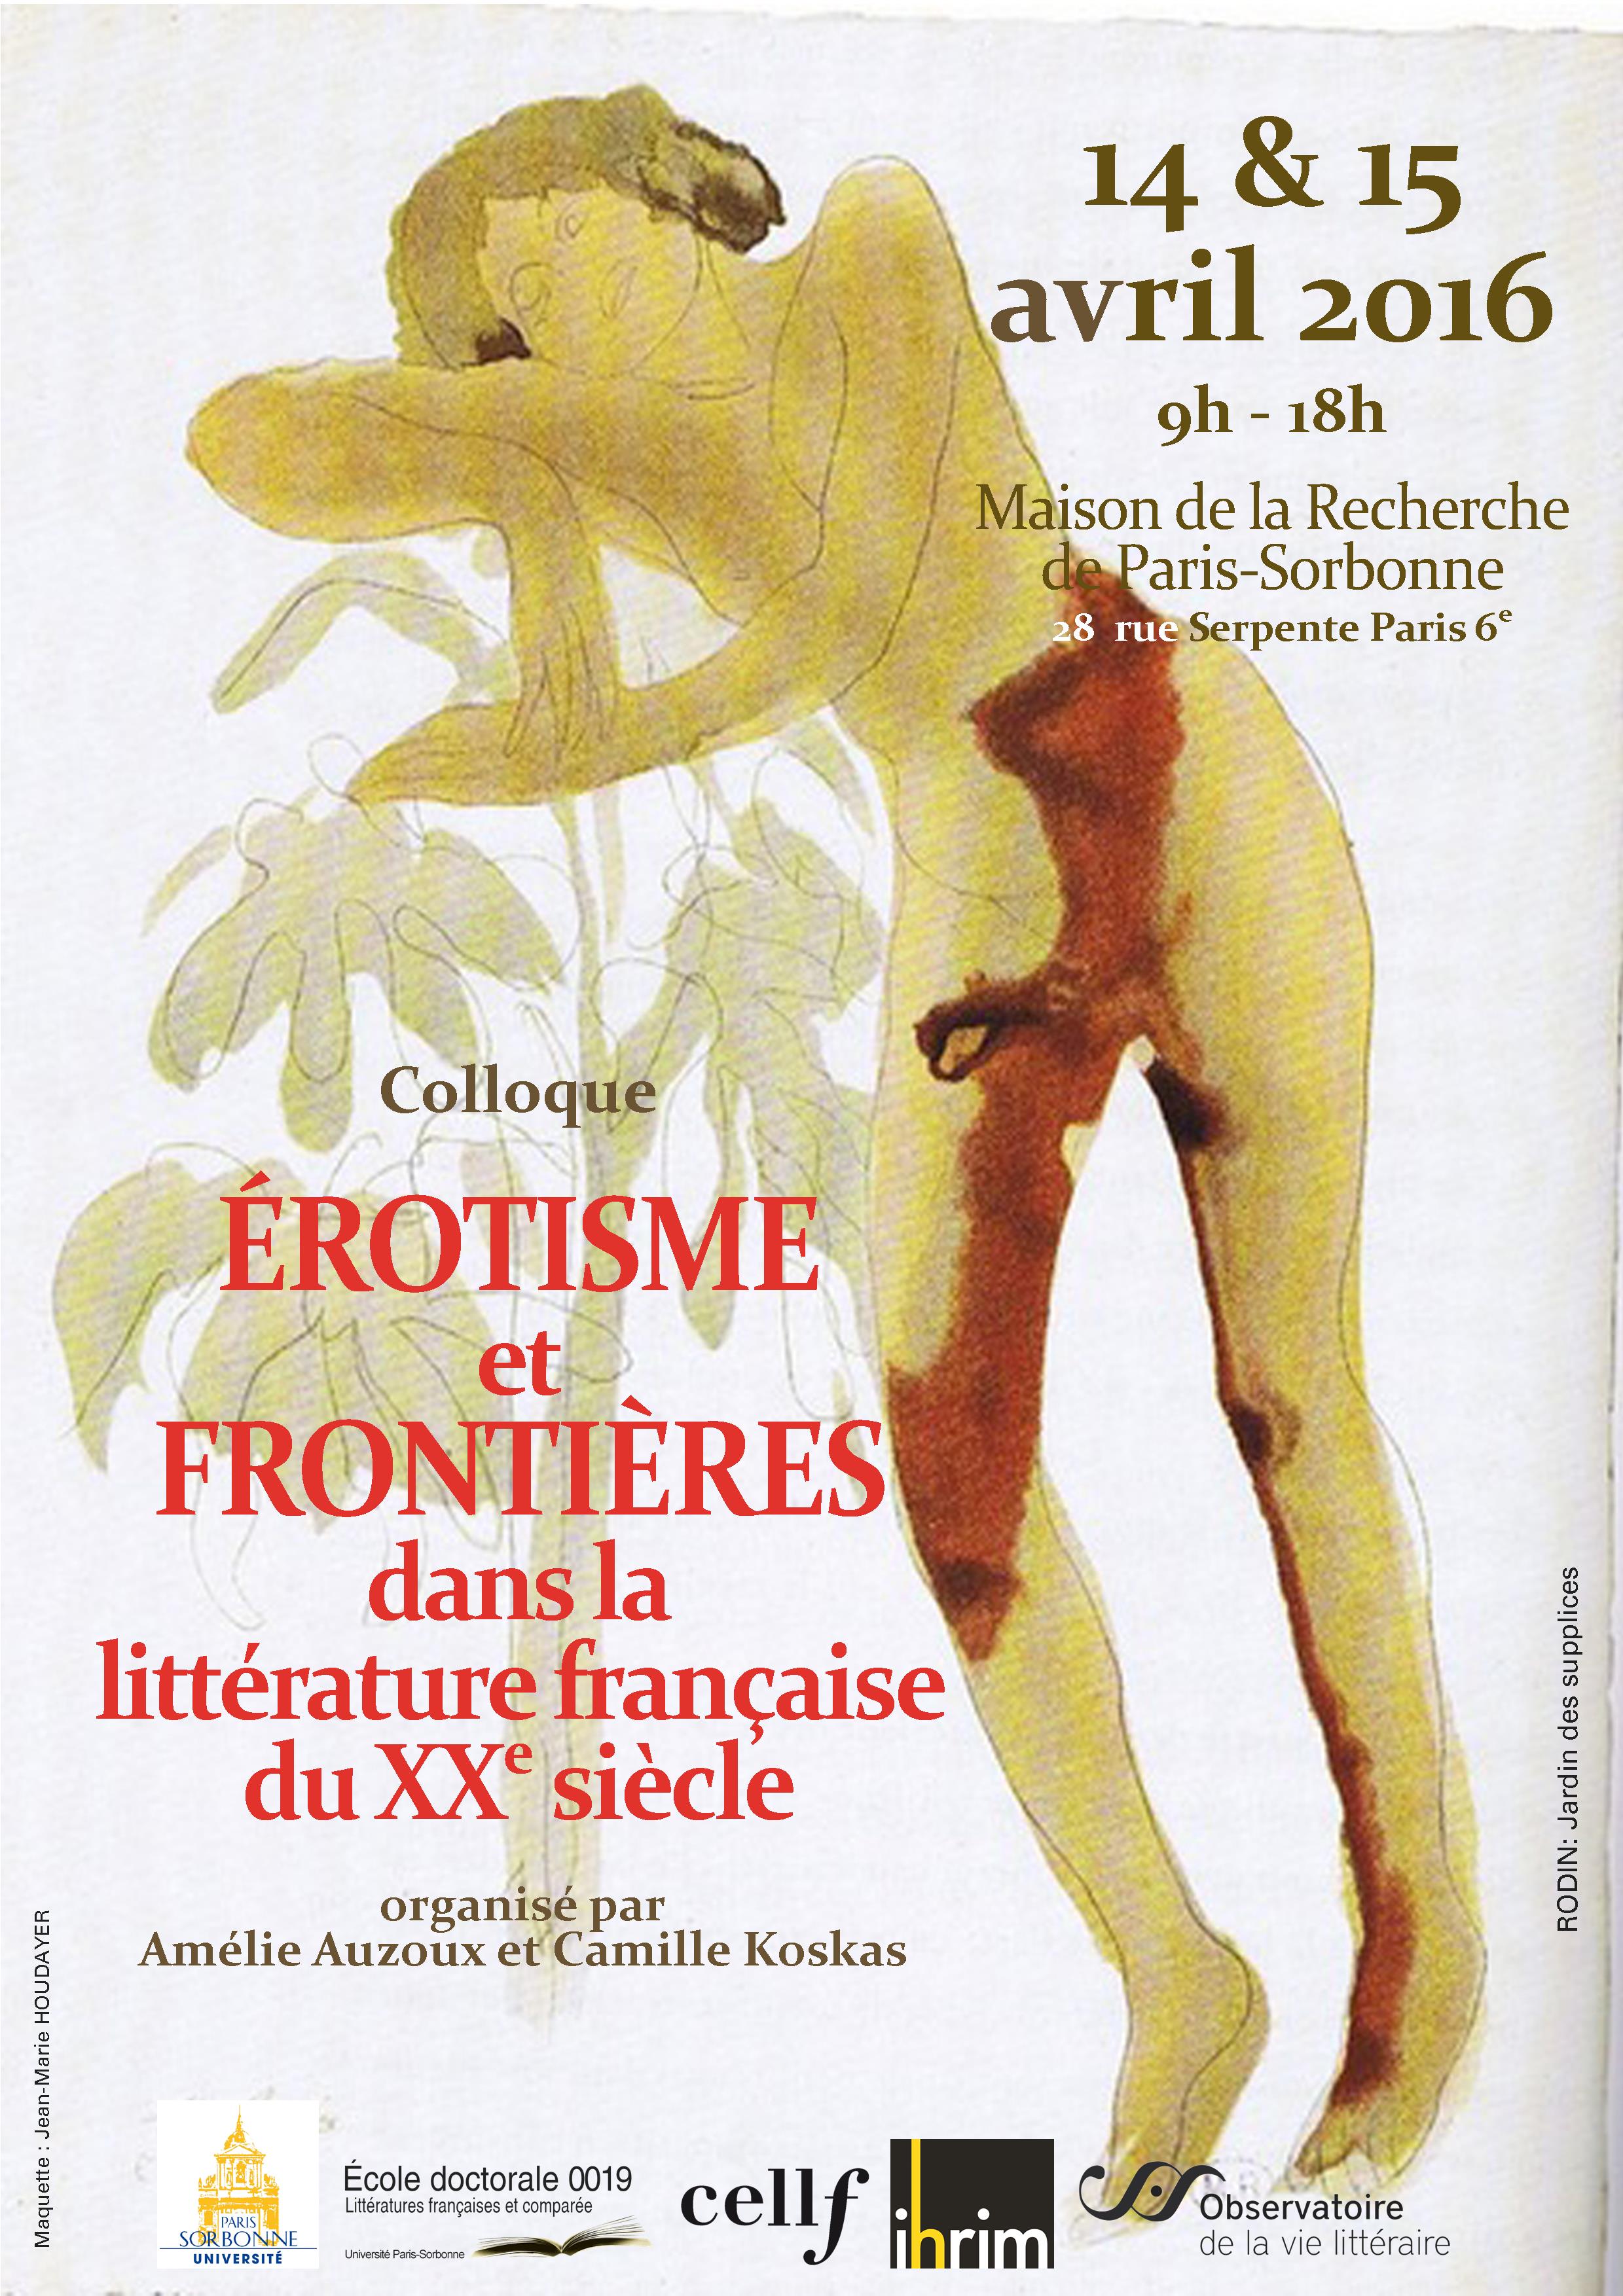 Erotisme et frontières dans la littérature française du XXe